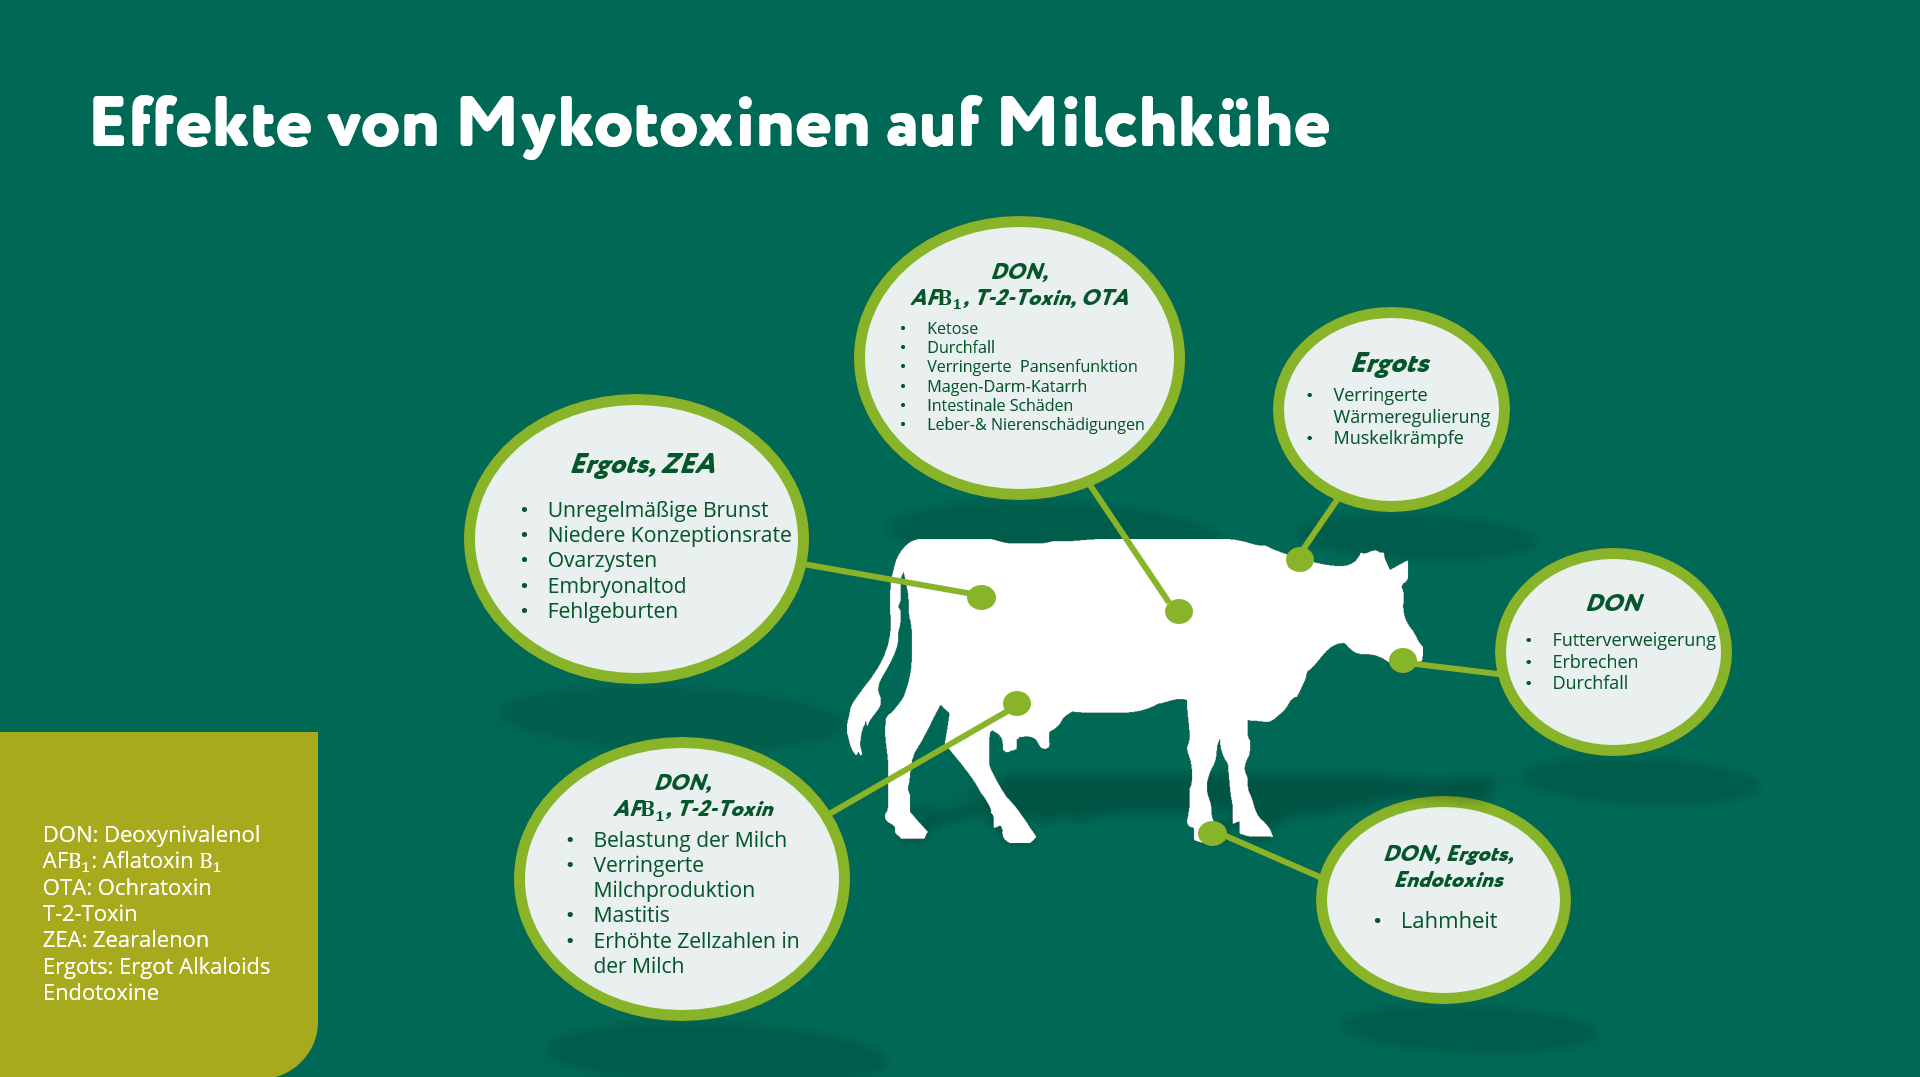 Grafik zu den Effekten von Mykotoxinen bei Milchkühen